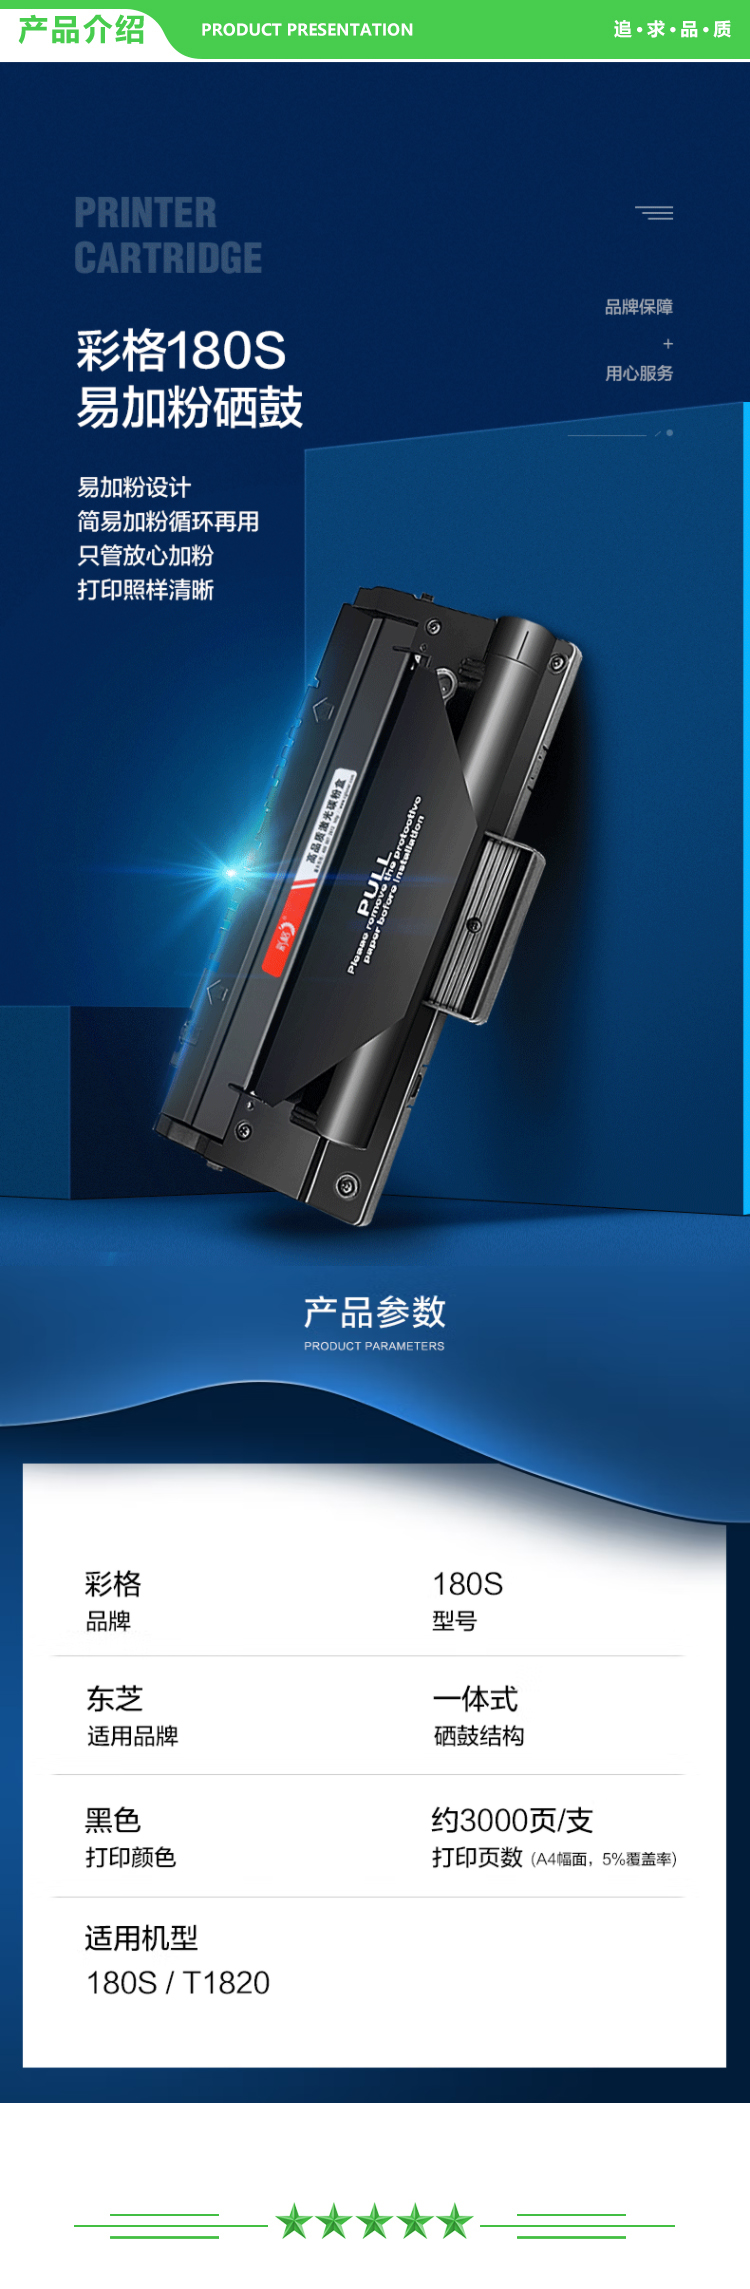 彩格 T-1820 黑色硒鼓-2支装 6000页 适用东芝180S墨盒Toshiba E-Studio 180S T-1820激光打印机复印机1820D1 DP1820.jpg